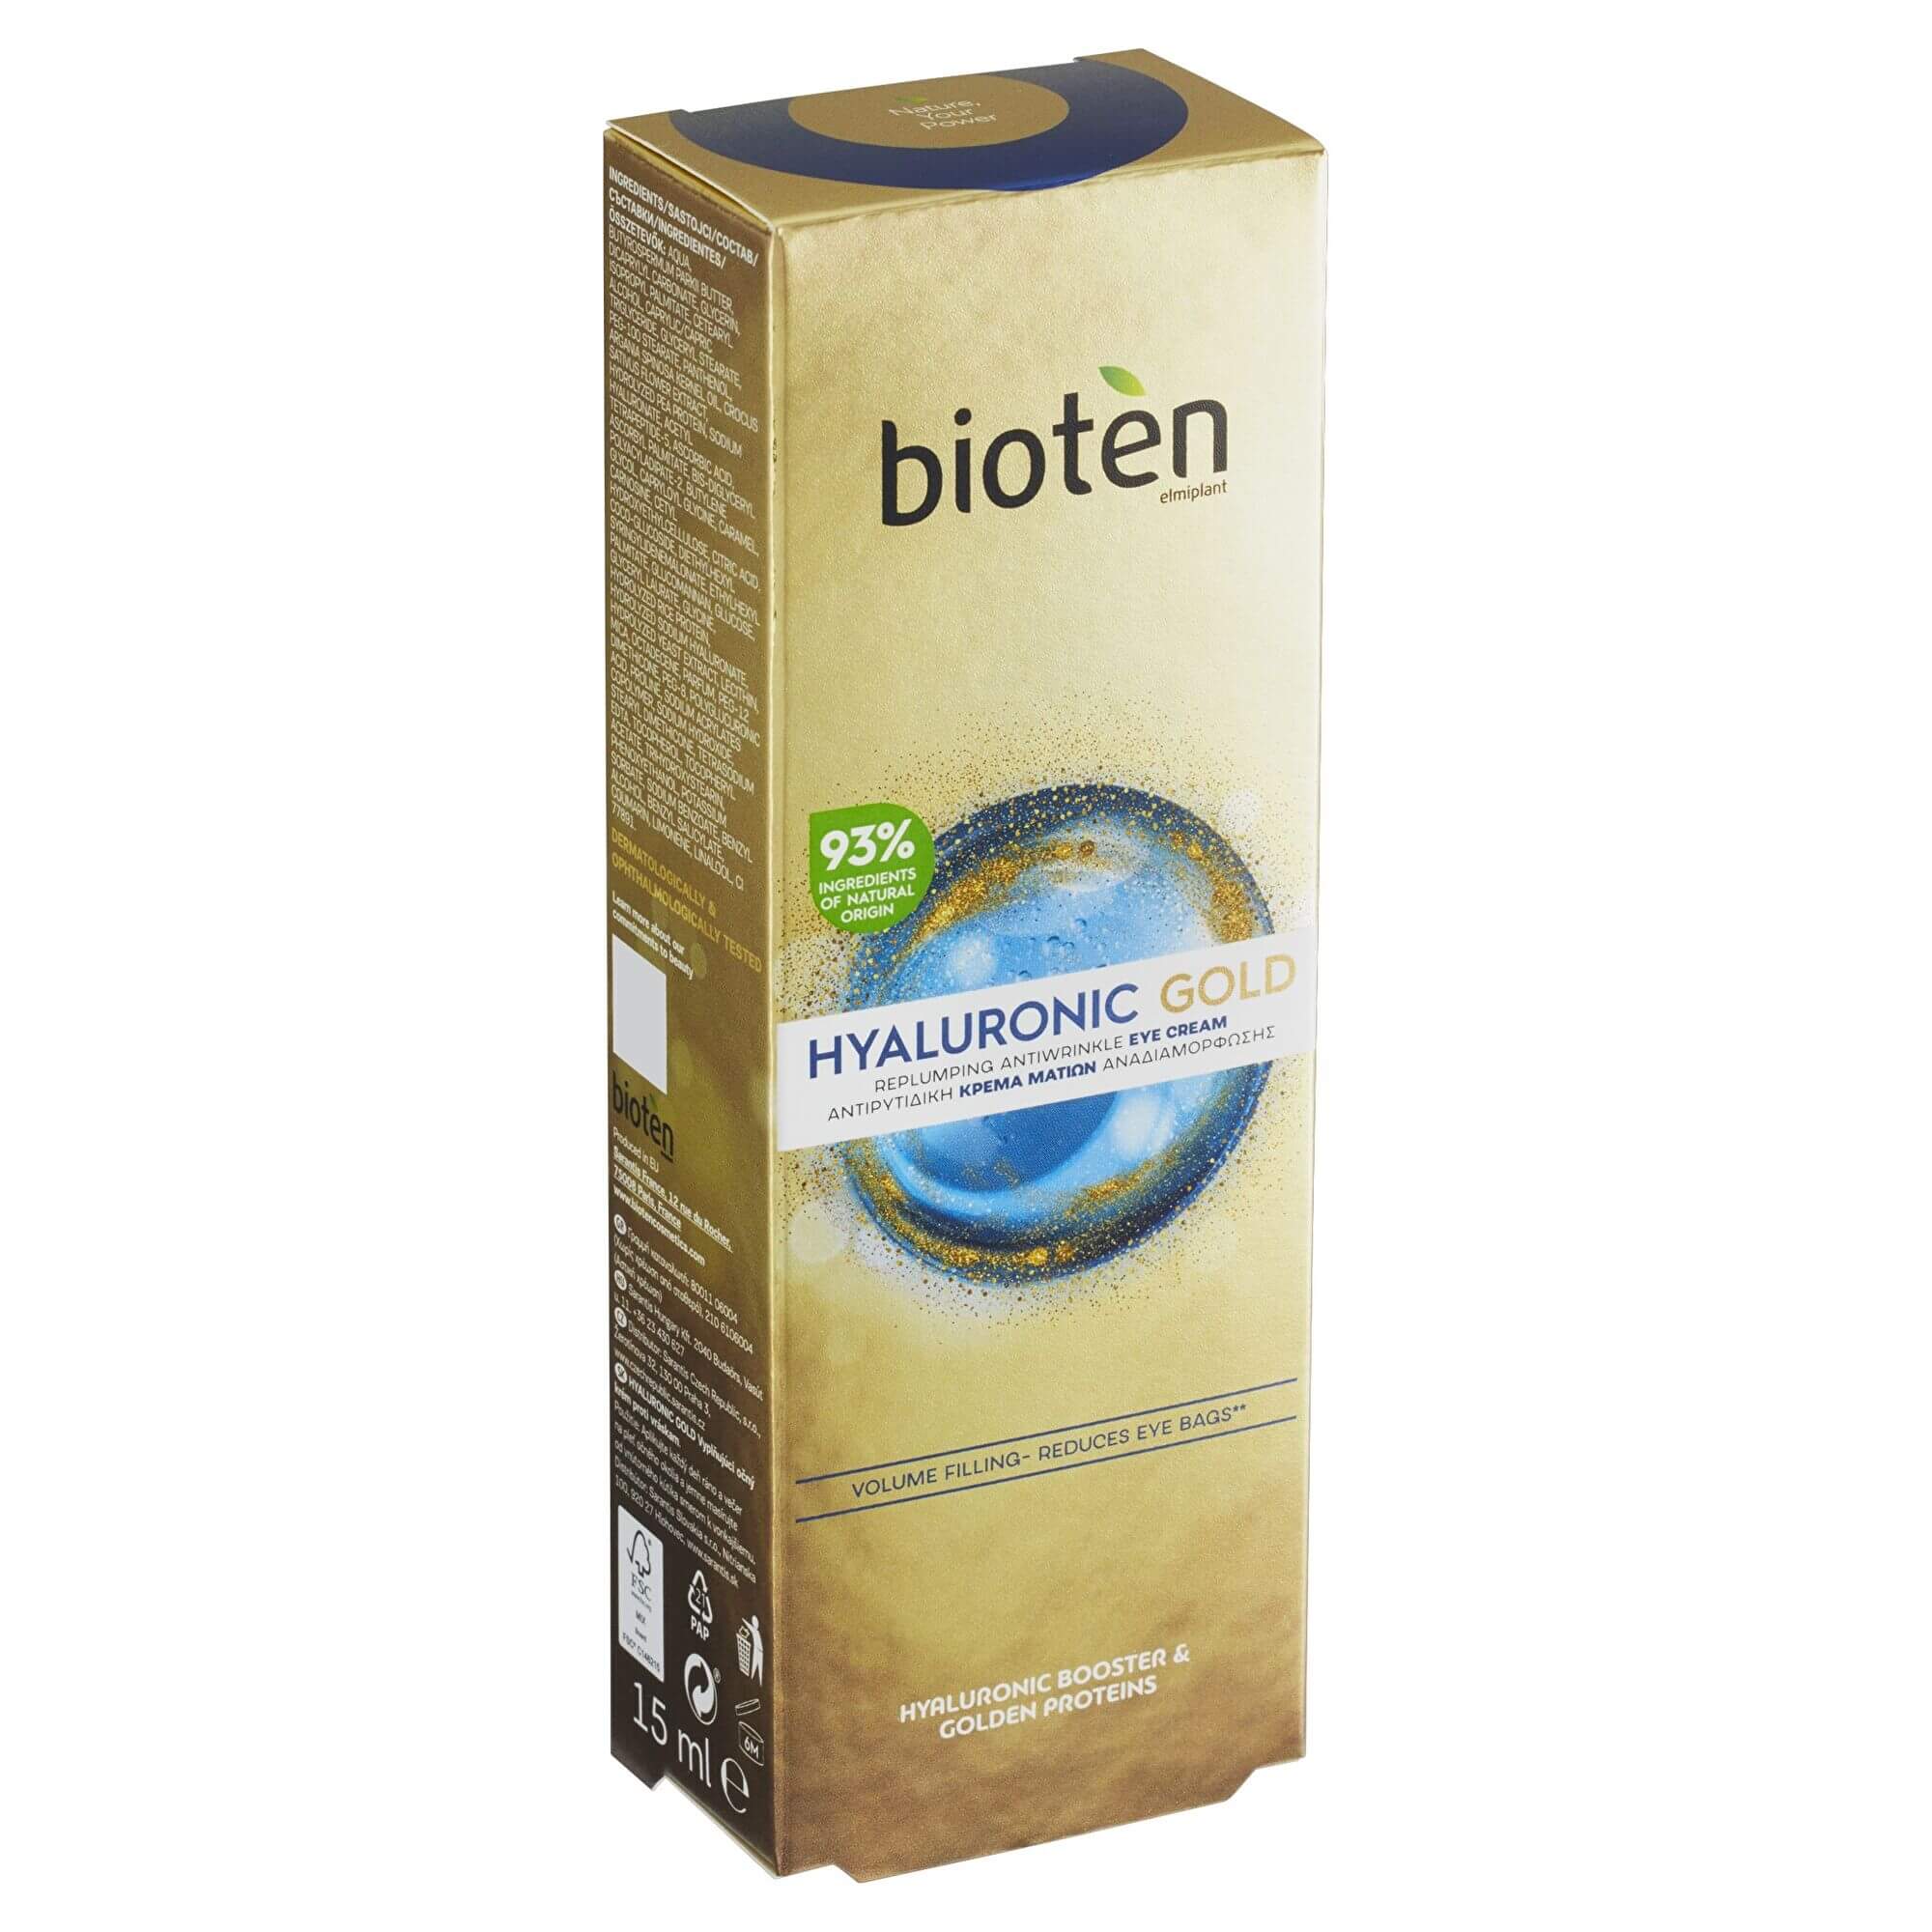 bioten Vyplňující oční krém Hyaluronic Gold (Replumping Antiwrinkle Eye Cream) 15 ml